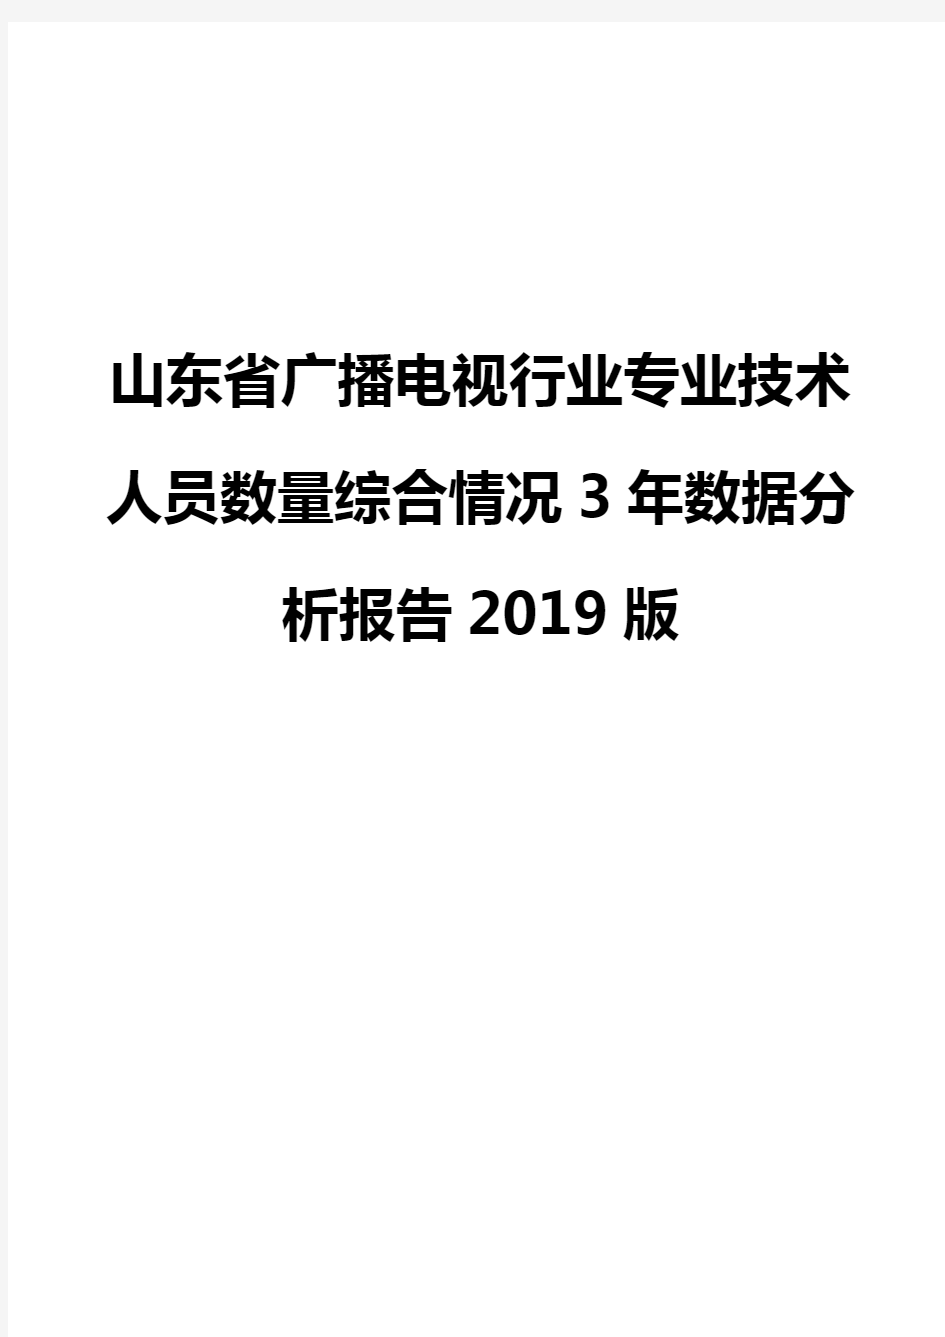 山东省广播电视行业专业技术人员数量综合情况3年数据分析报告2019版